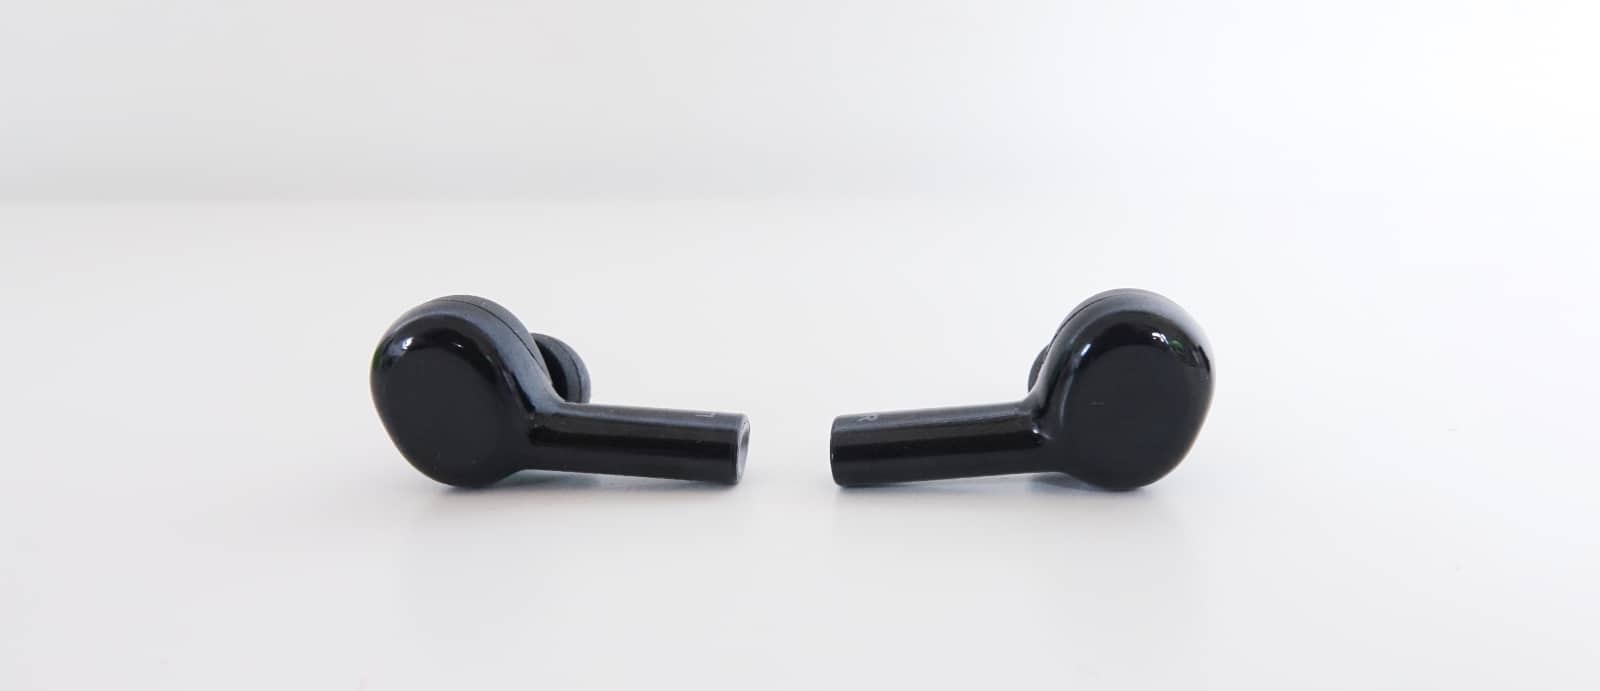 Belkin Soundform Freedom True Wireless Earbuds review